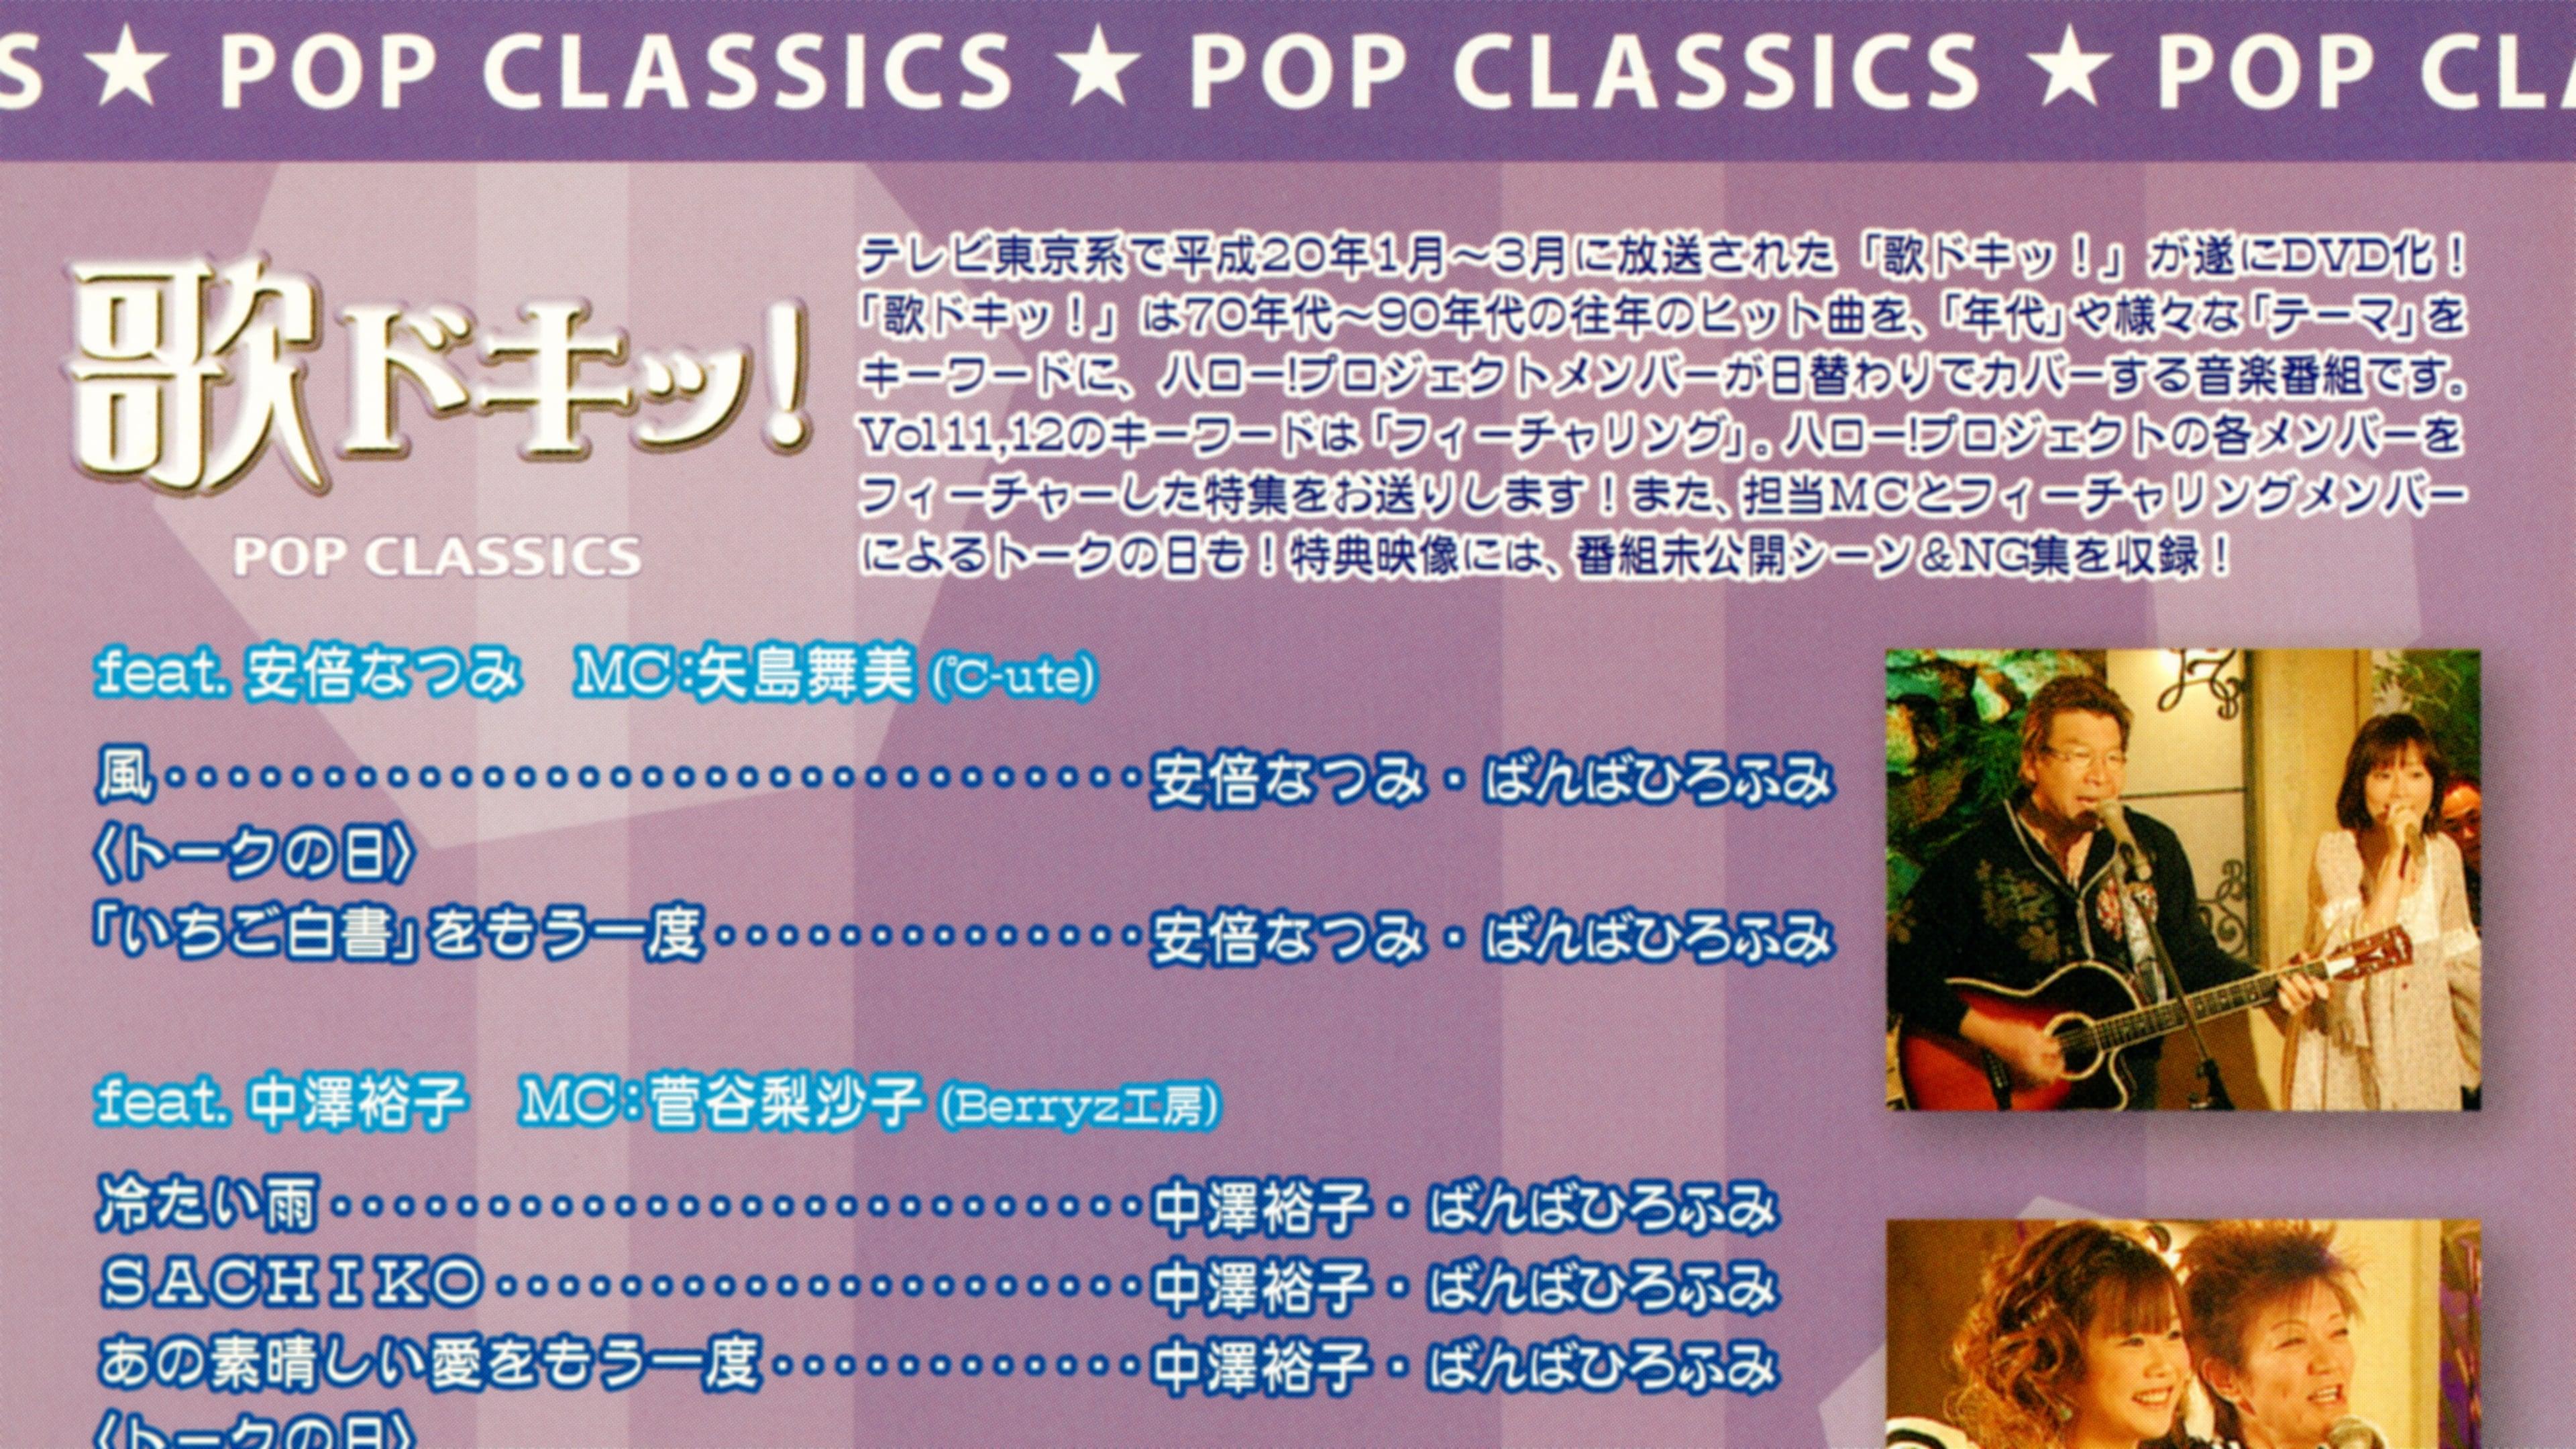 Uta Doki! Pop Classics Vol.12 backdrop